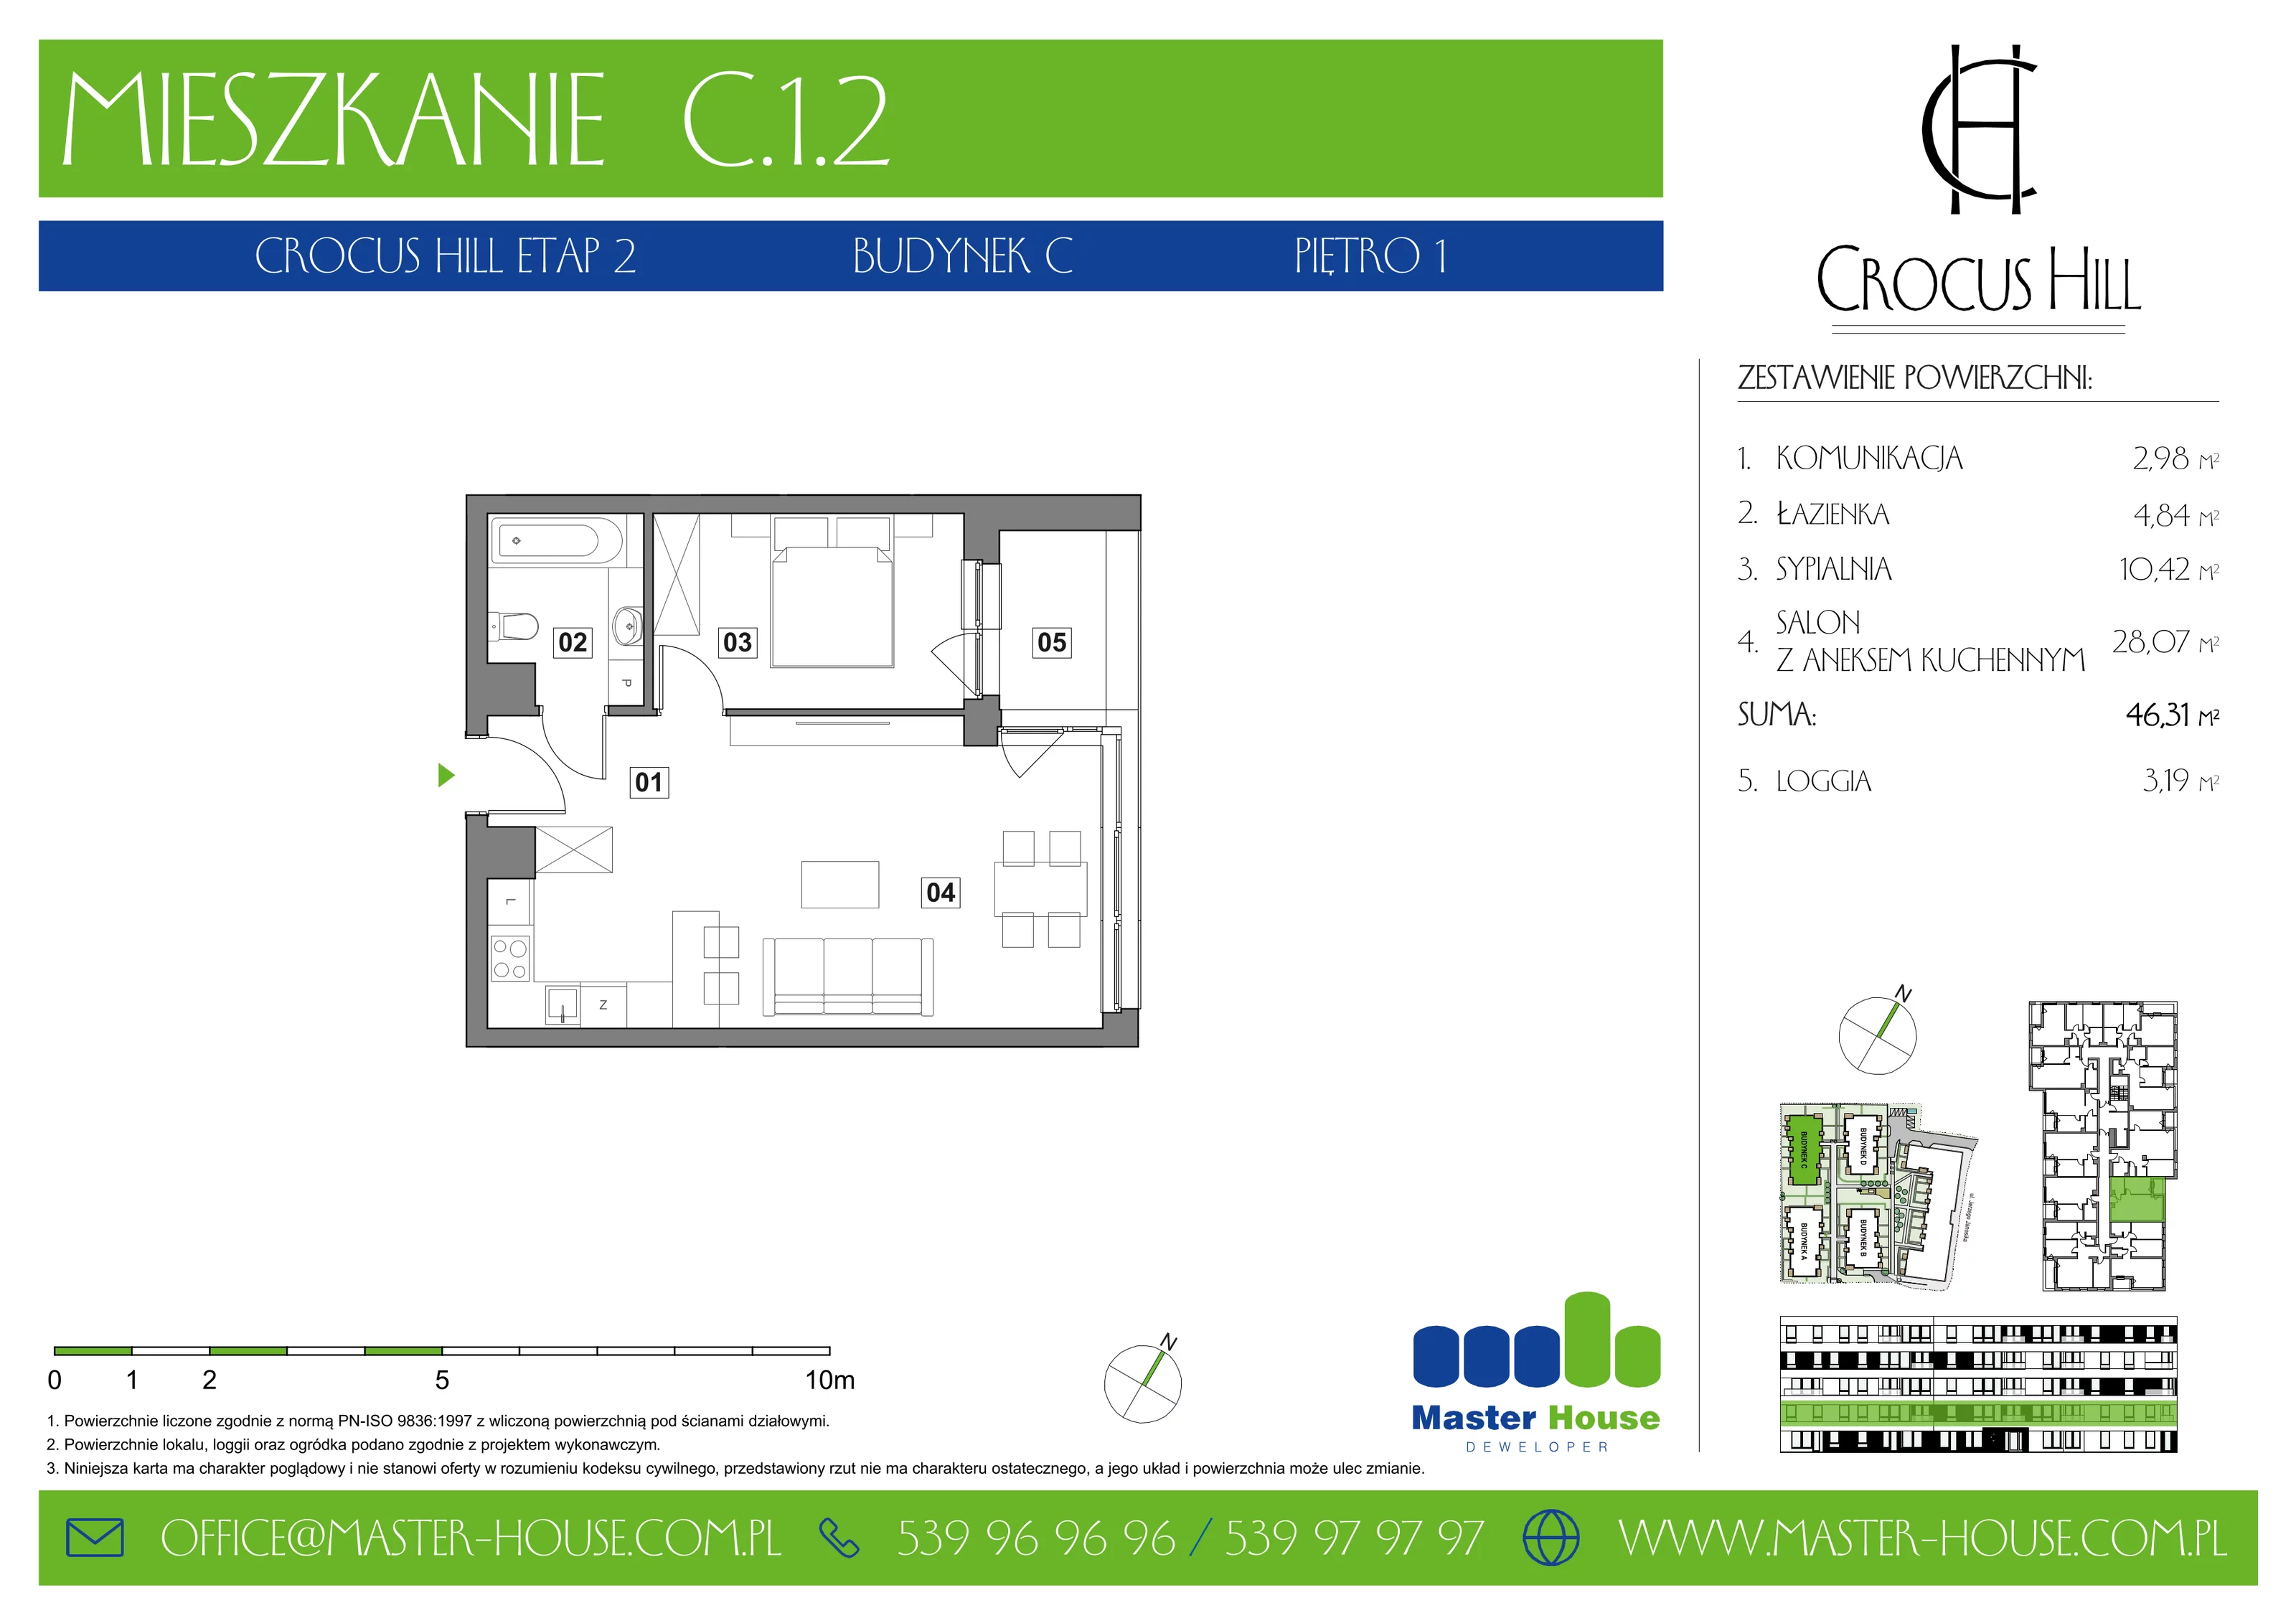 Mieszkanie 46,31 m², piętro 1, oferta nr C.1.2, Crocus Hill, Szczecin, Śródmieście, ul. Jerzego Janosika 2, 2A, 3, 3A